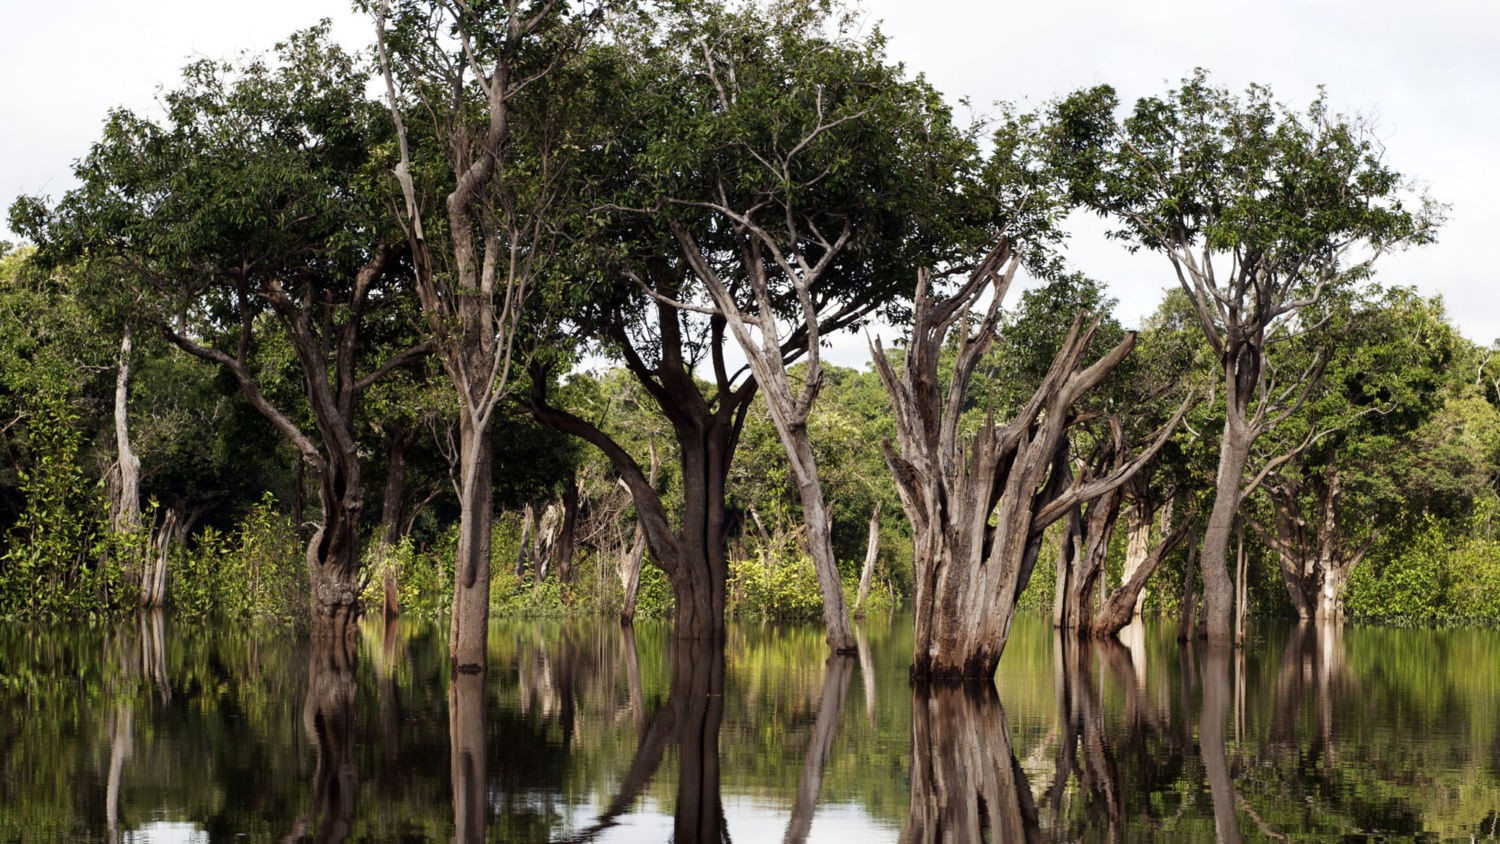 Uma floresta pantanosa em Tupana, Brasil.  (Foto: AMAURI AGUIAR / FLICKR)